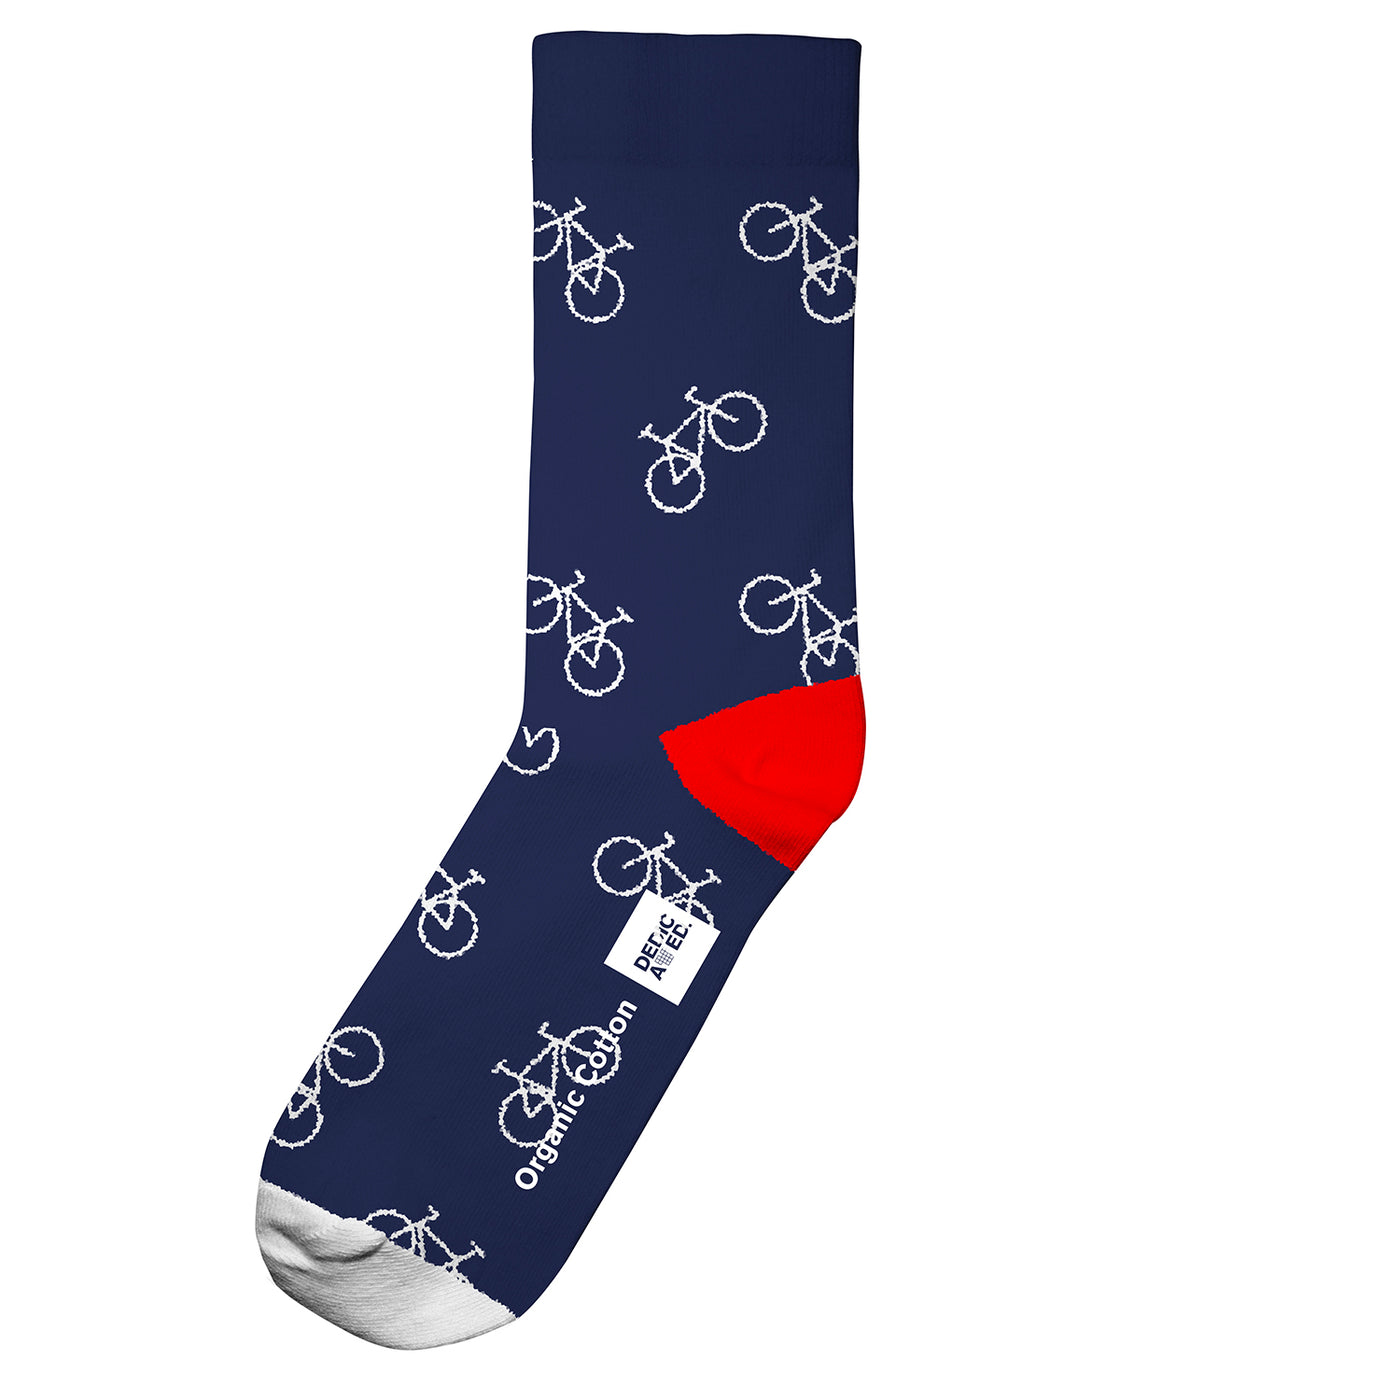 Dedicated - Socks Sigtuna Bike Pattern Navy. Socken. Nachhaltige Kleidung für Männer. Bio, fair & vegan. green.in.pieces